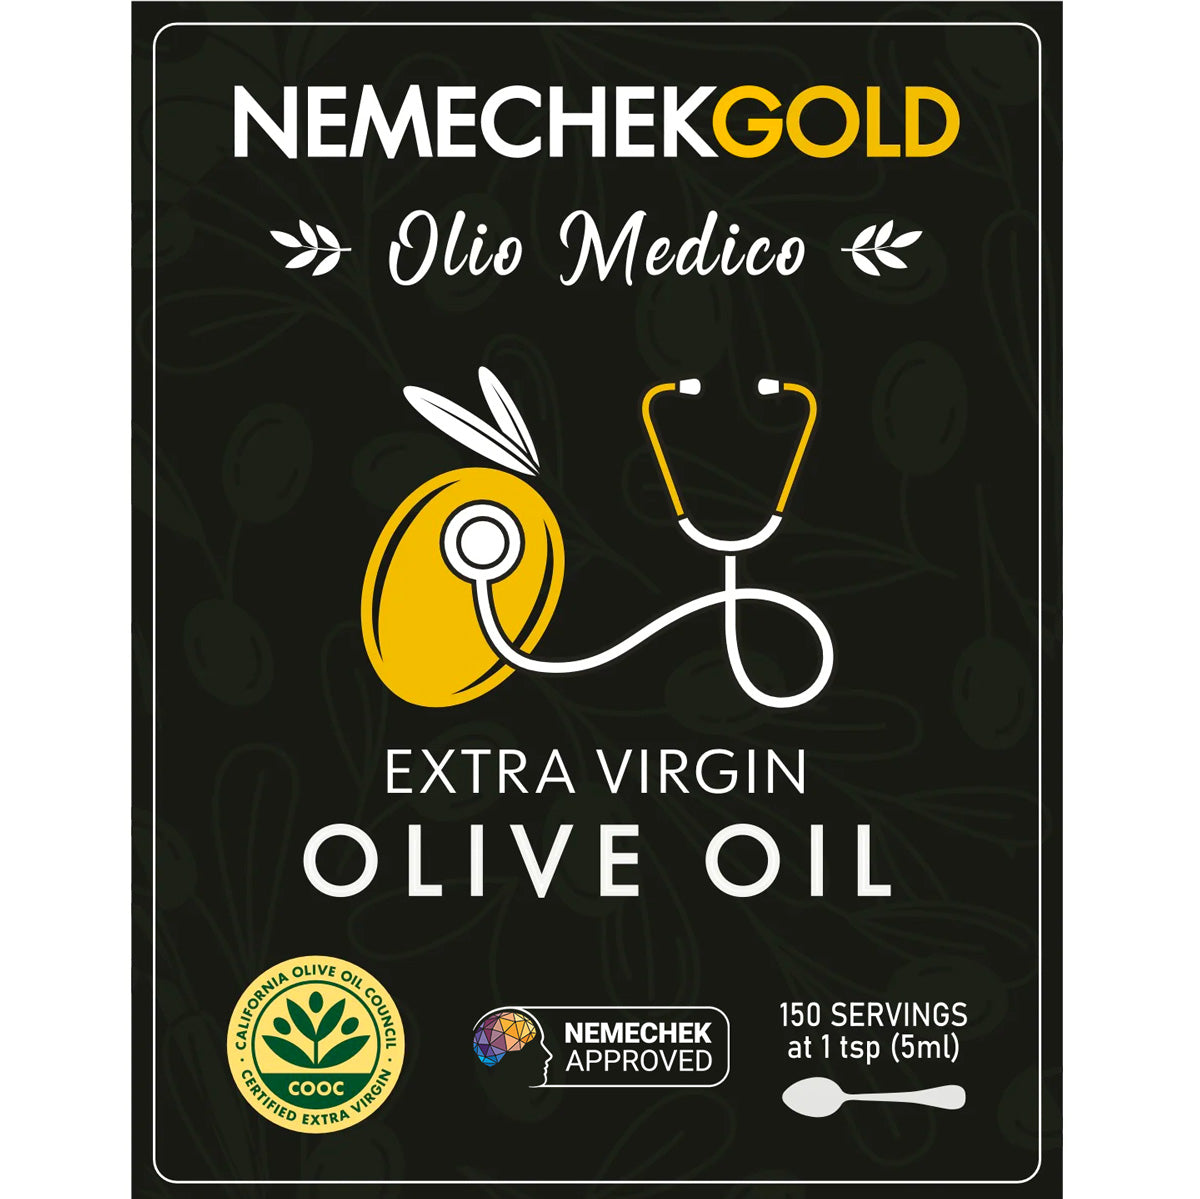 Olio Medico Extra Virgin Olive Oil, 750 ml - Buy 2, Save 25%